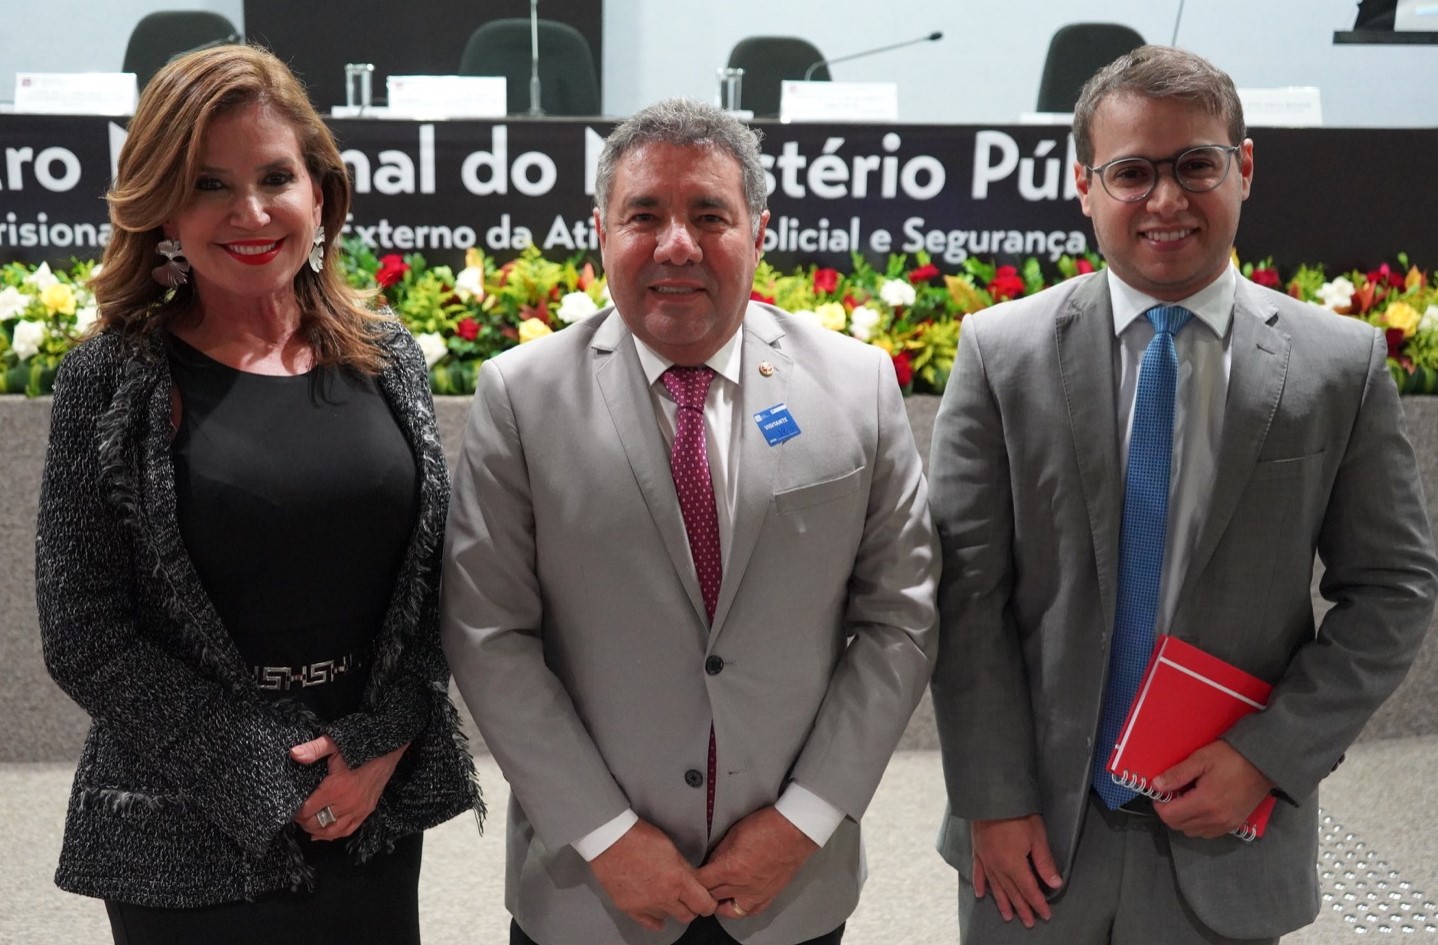 PGJ Márcio Roberto e promotores do MPAL debatem os desafios e disseminação de boas práticas para o sistema prisional e a segurança pública do país